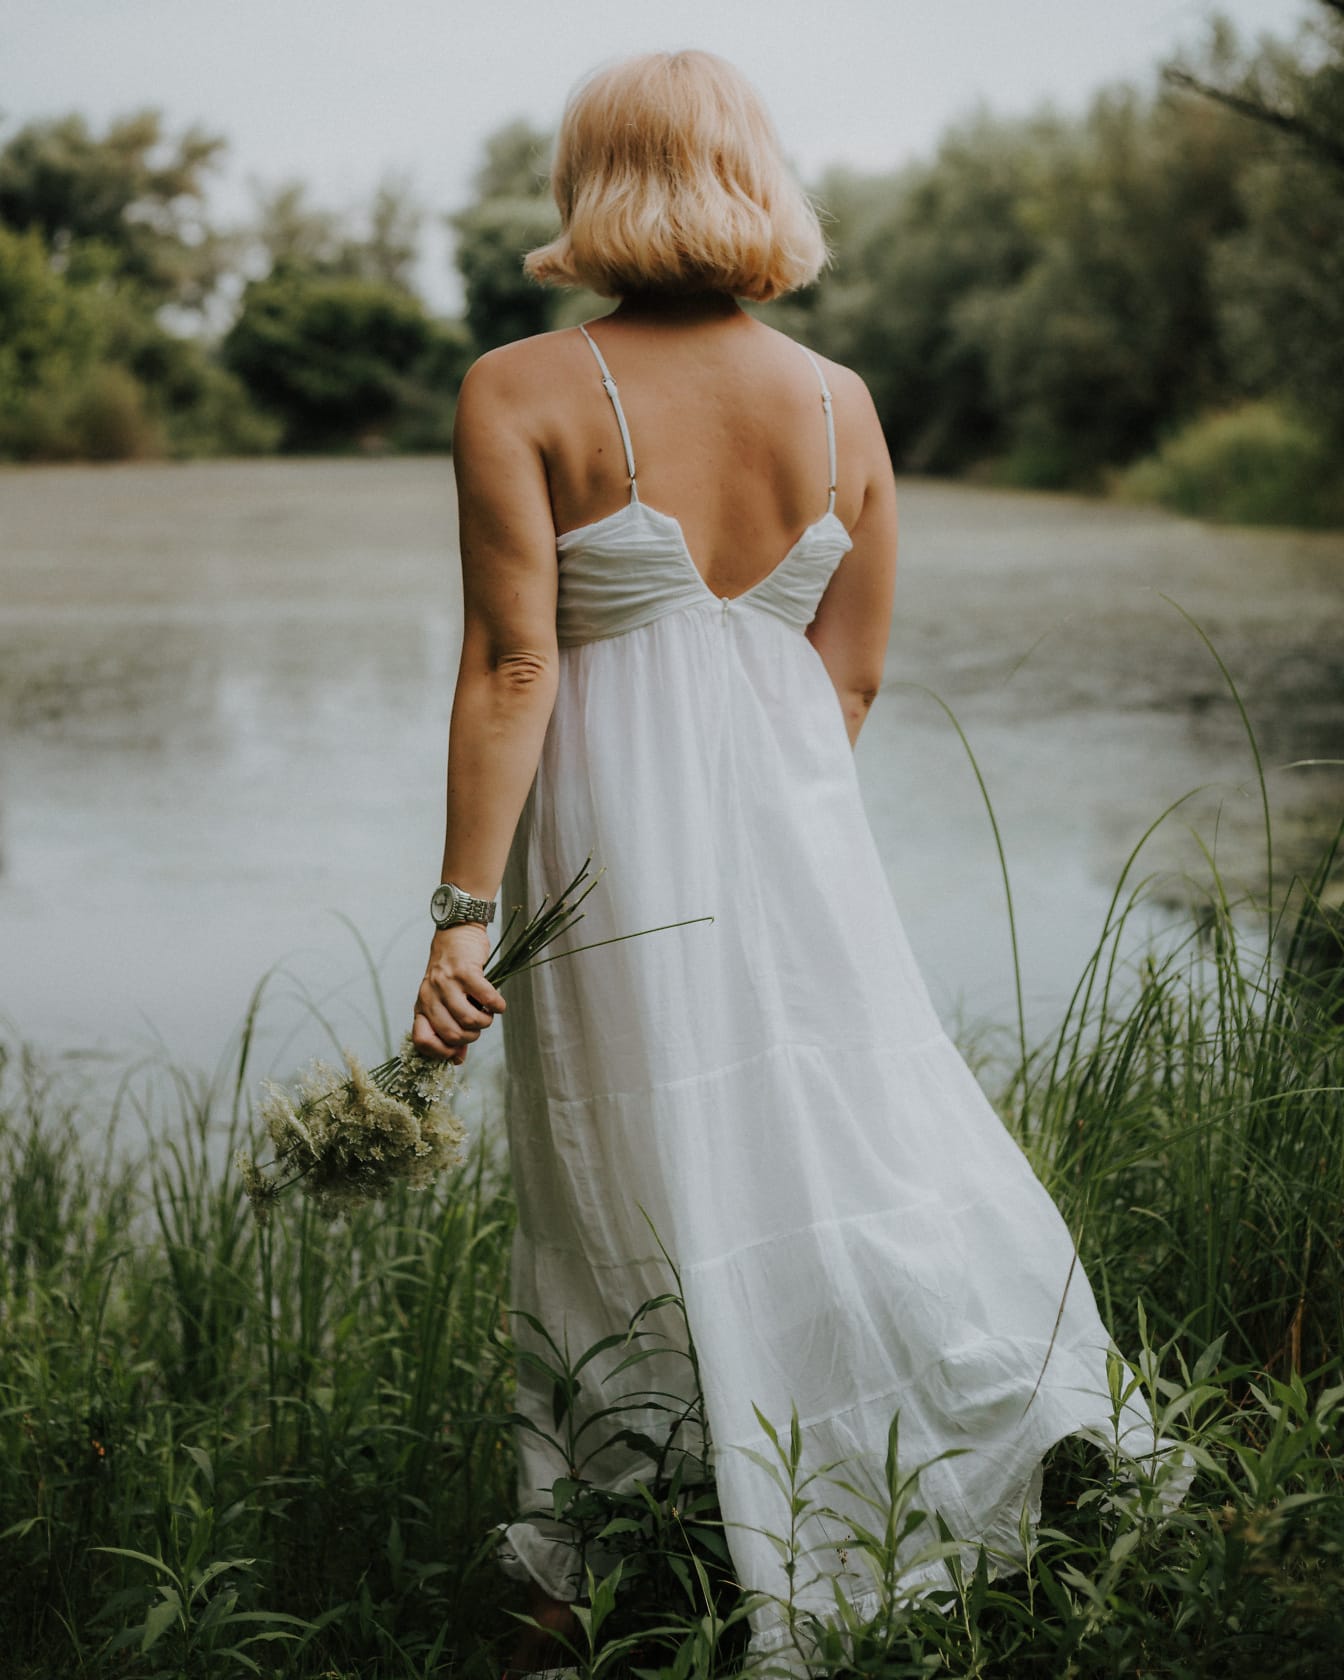 Gaun putih backless klasik kuno pada model foto pirang